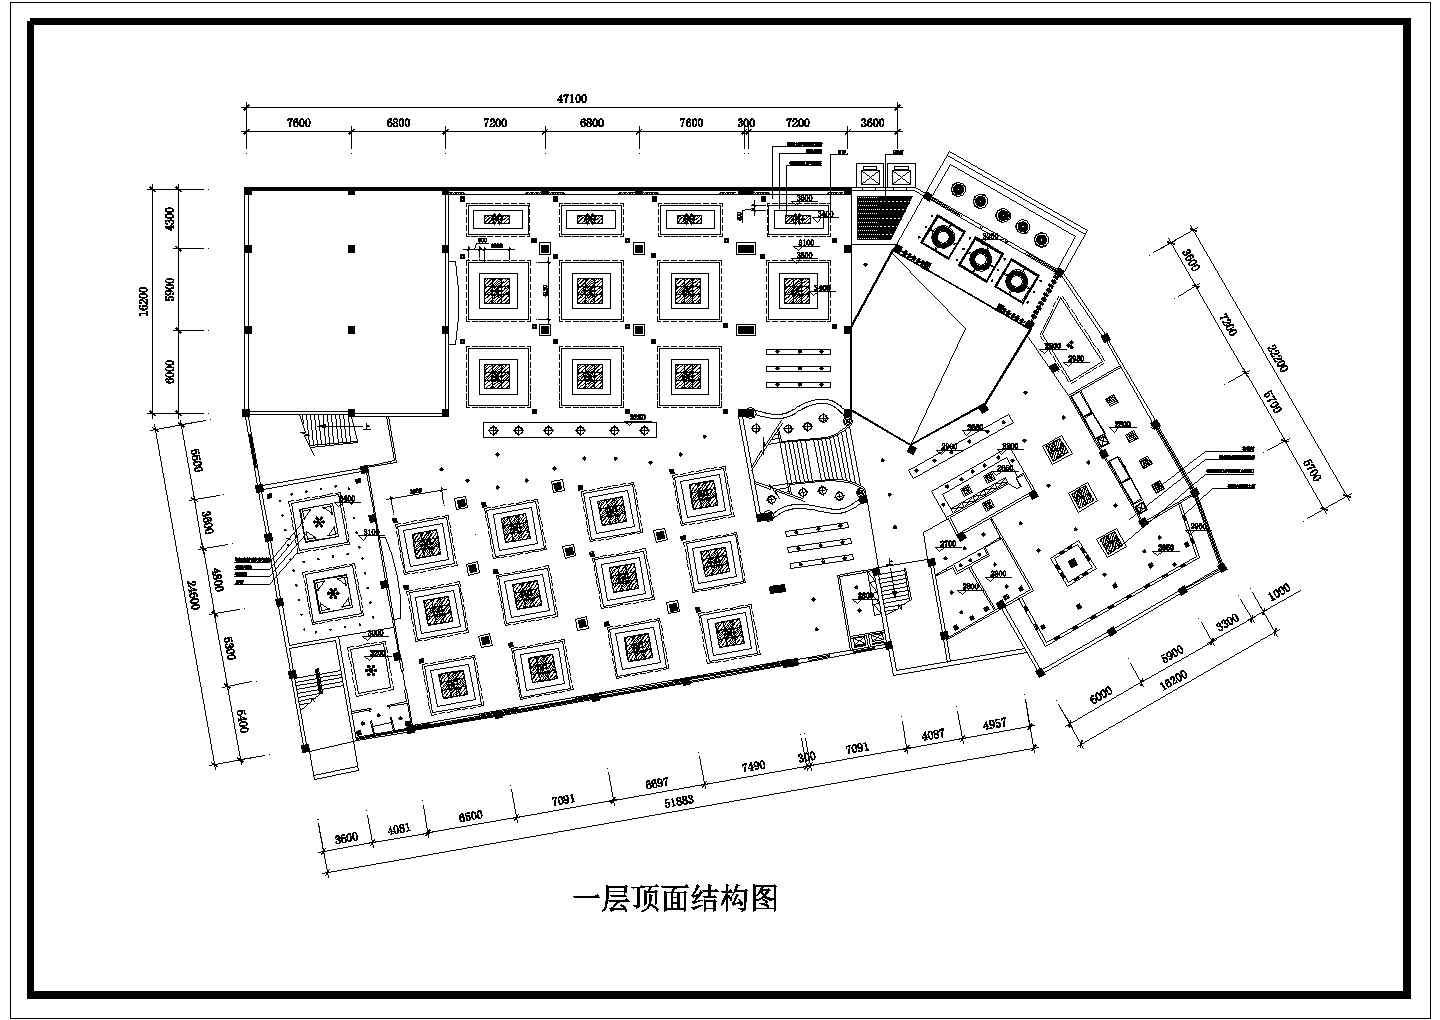 江苏省南京市某区新建五星级酒店顶面装修设计CAD图纸